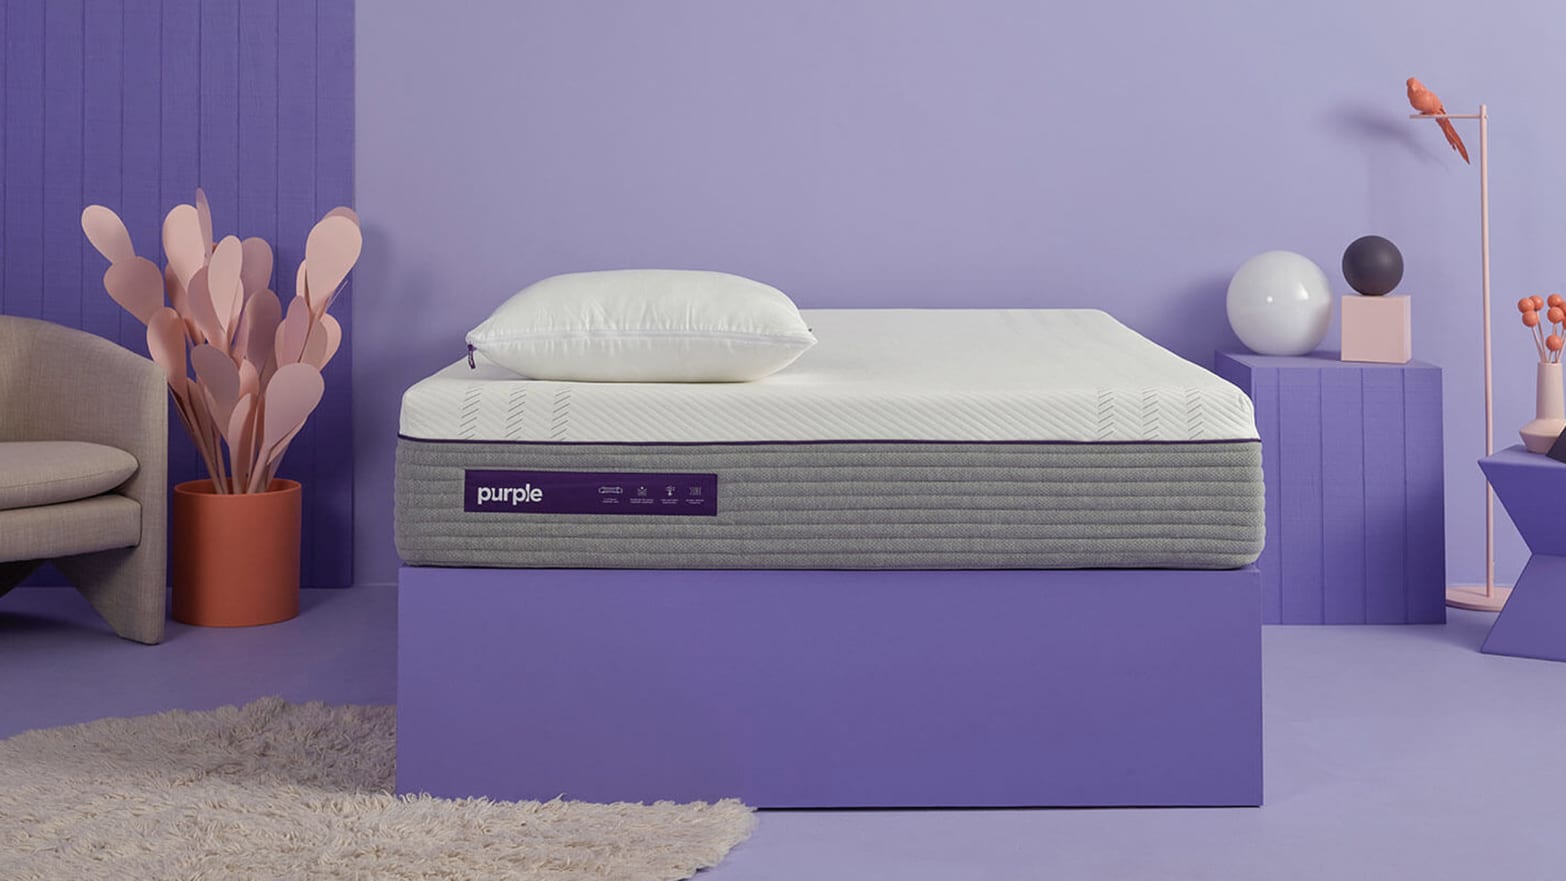 Purples Hybrid Premier Mattress Made Me a Better Sleeper